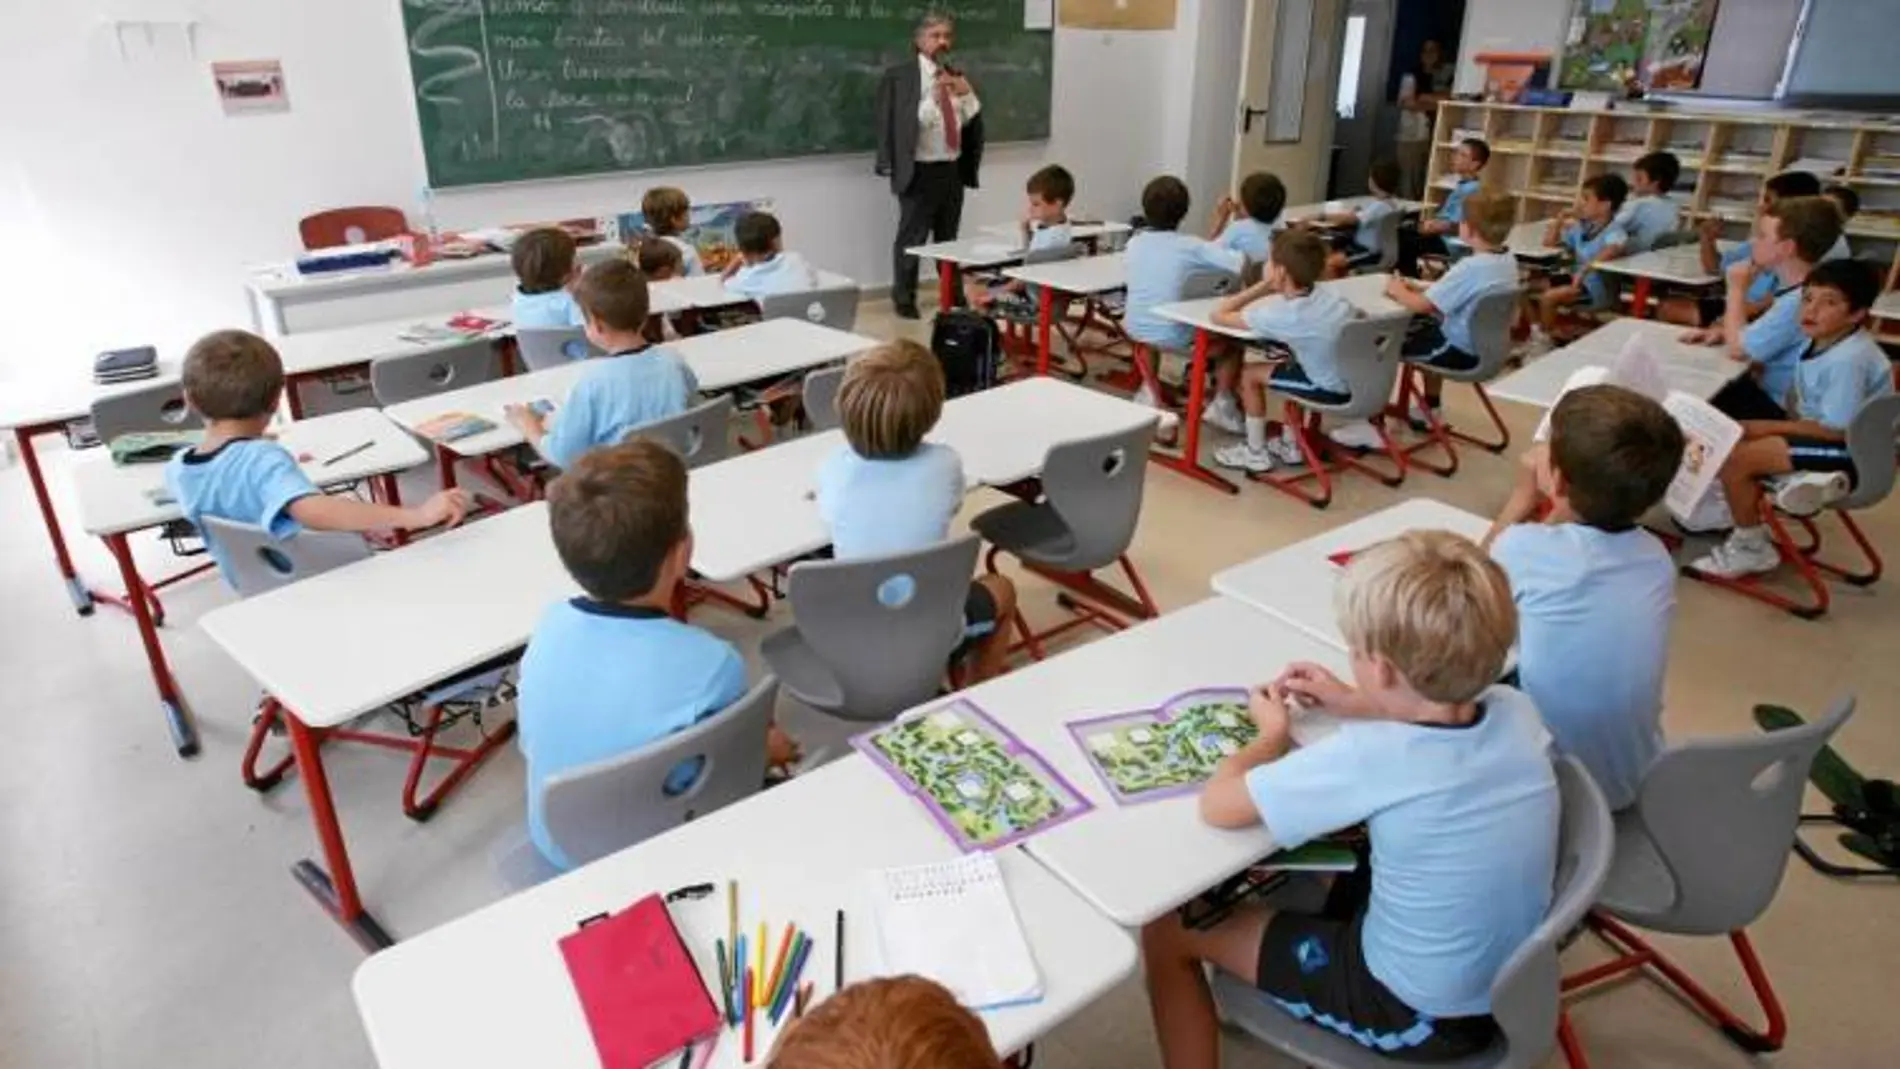 En España, la mayoría de centros de educación diferenciada están vinculados a instituciones religiosas